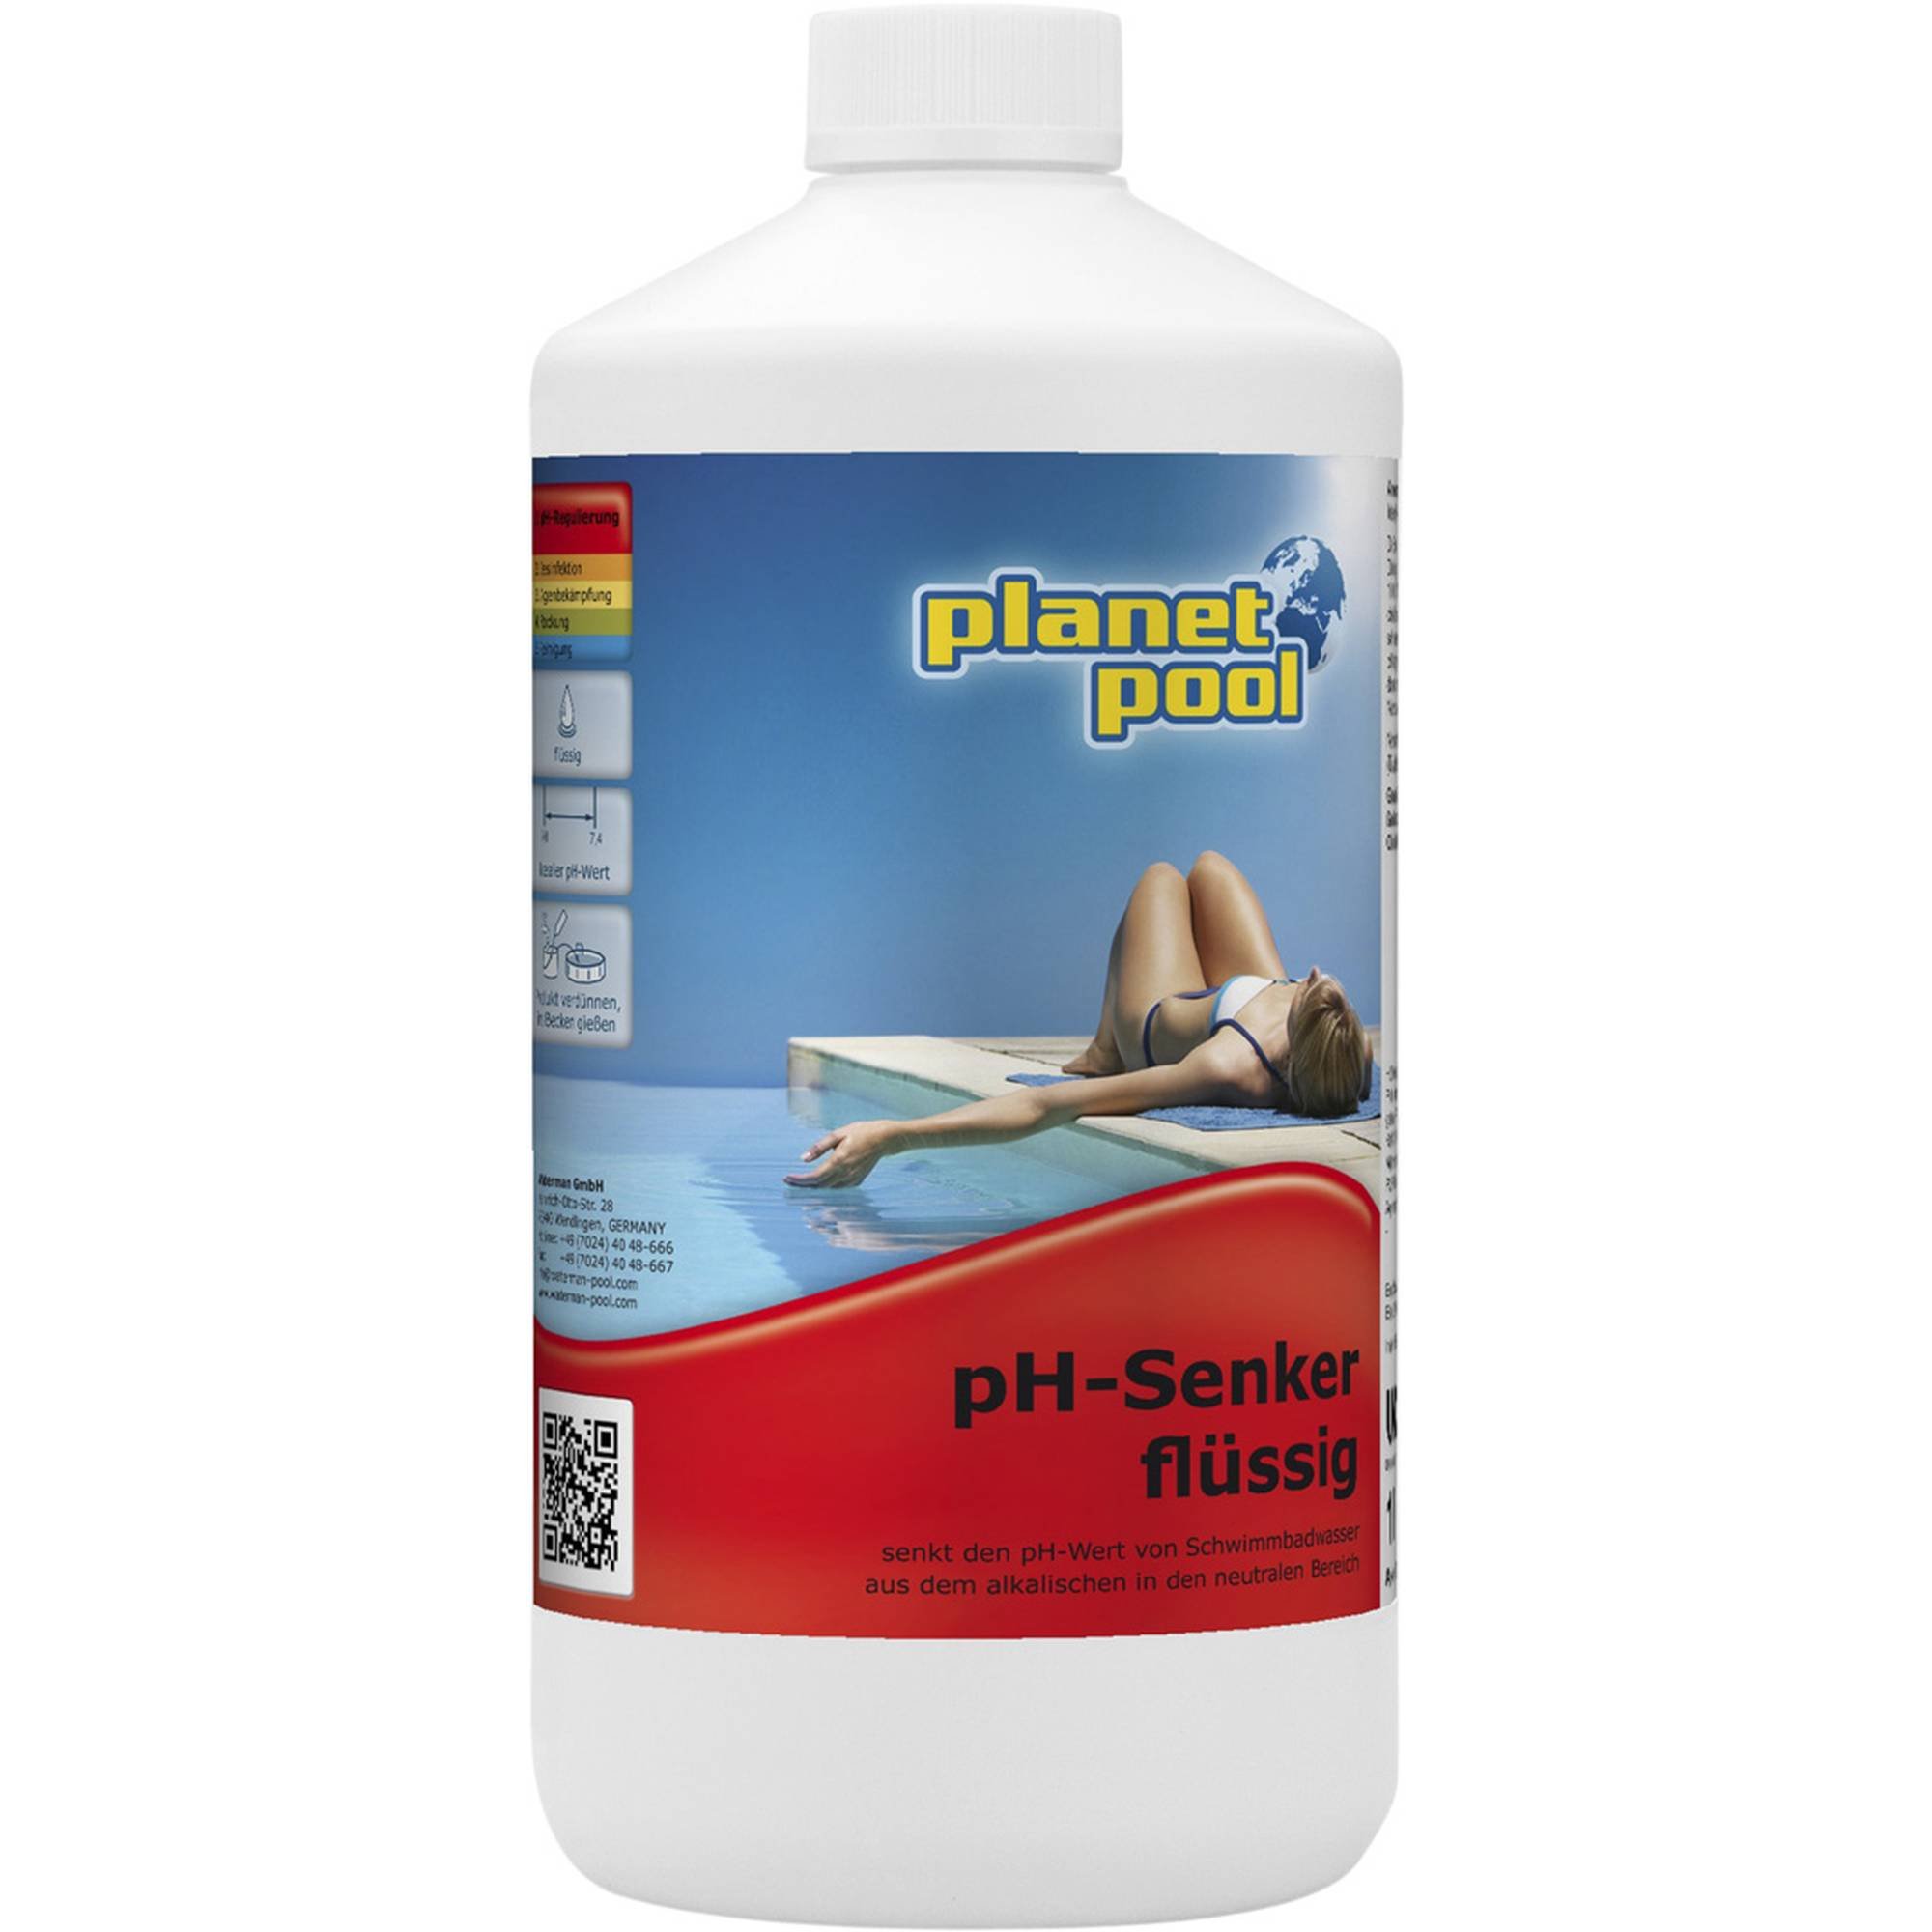 Planet Pool - pH-Senker flüssig, 5 Ltr.